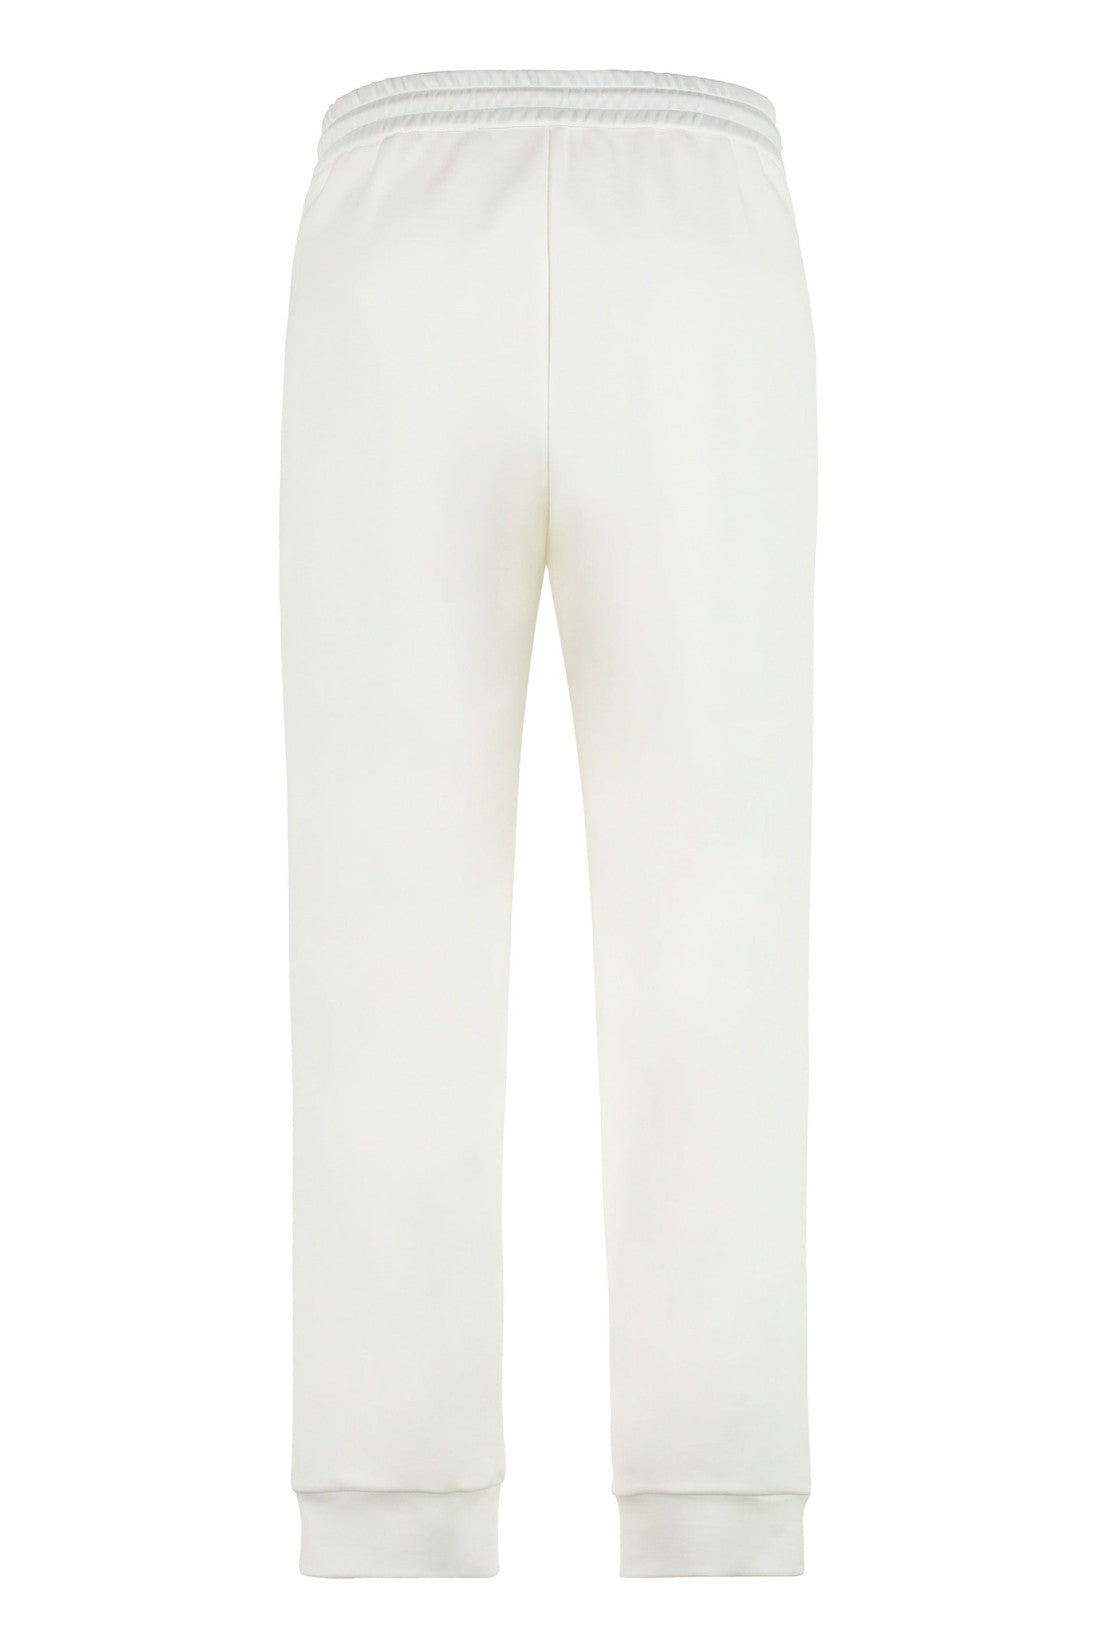 Giorgio Armani-OUTLET-SALE-Logo detail cotton track-pants-ARCHIVIST